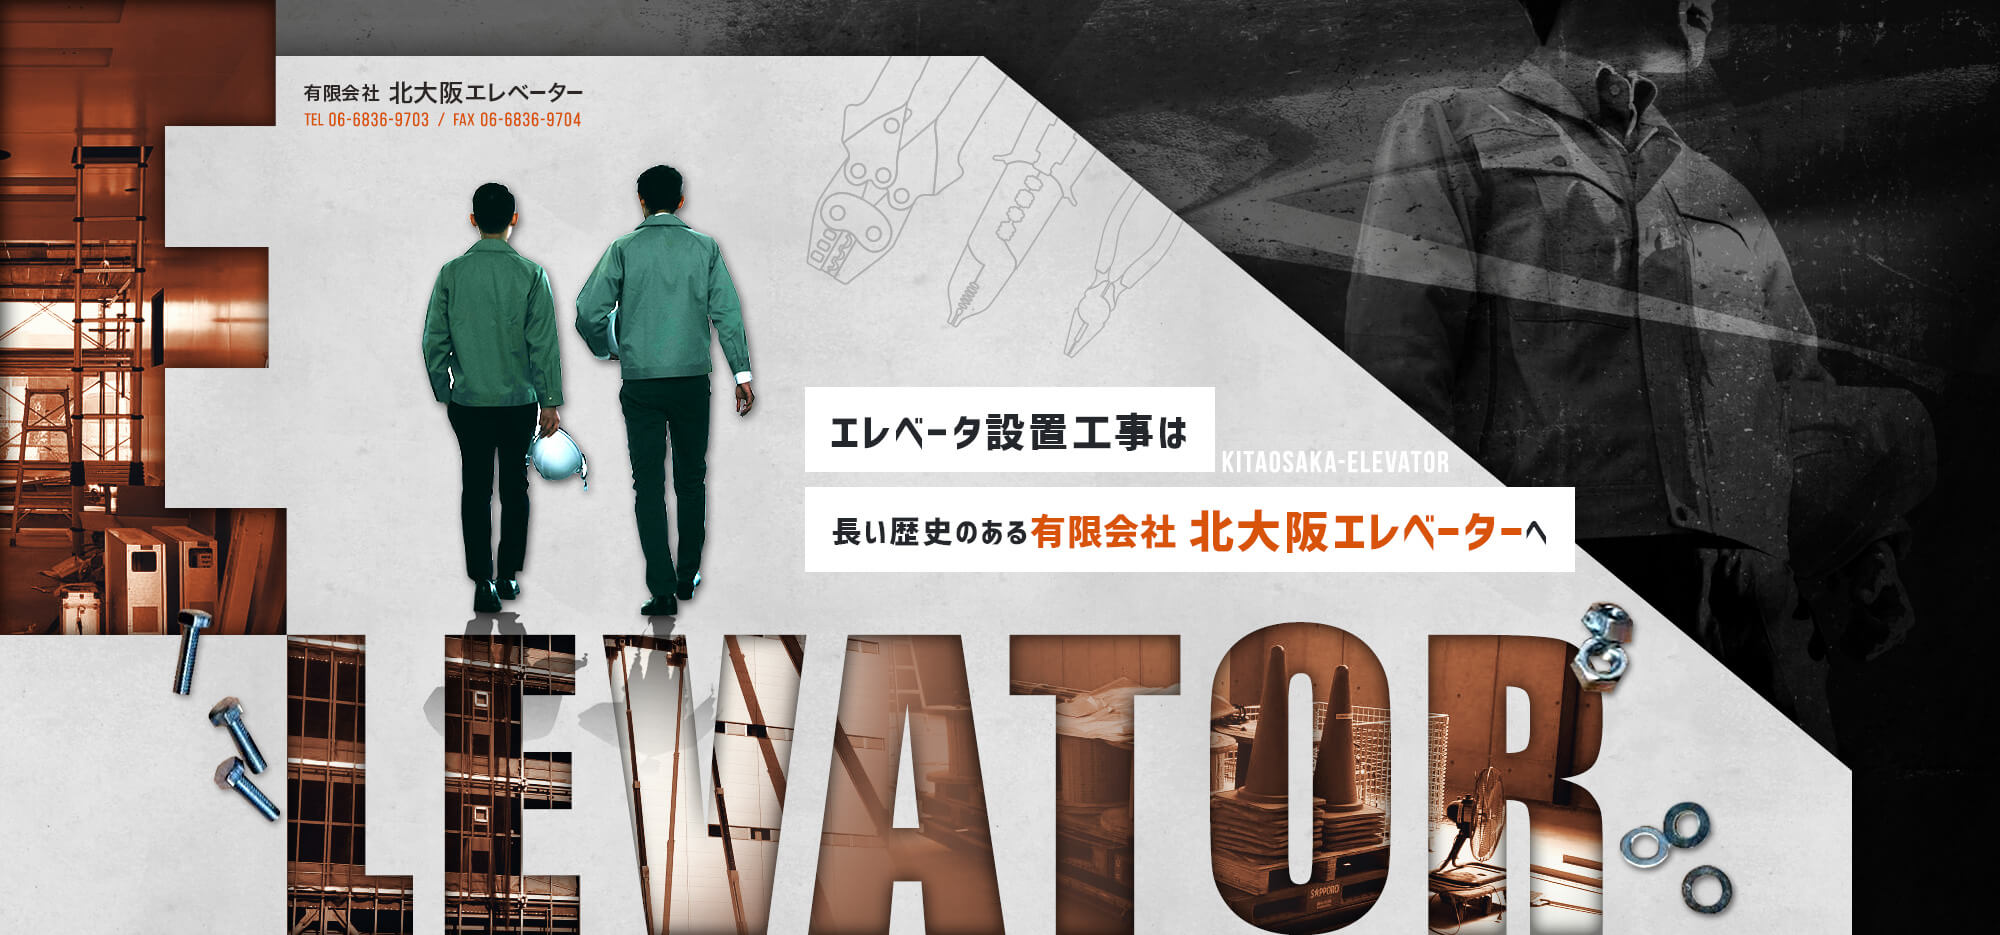 有限会社北大阪エレベーター TEL：06-6836-9703 FAX：06-6836-9704 エレベータ設置工事は長い歴史のある有限会社 北大阪エレベーターへ